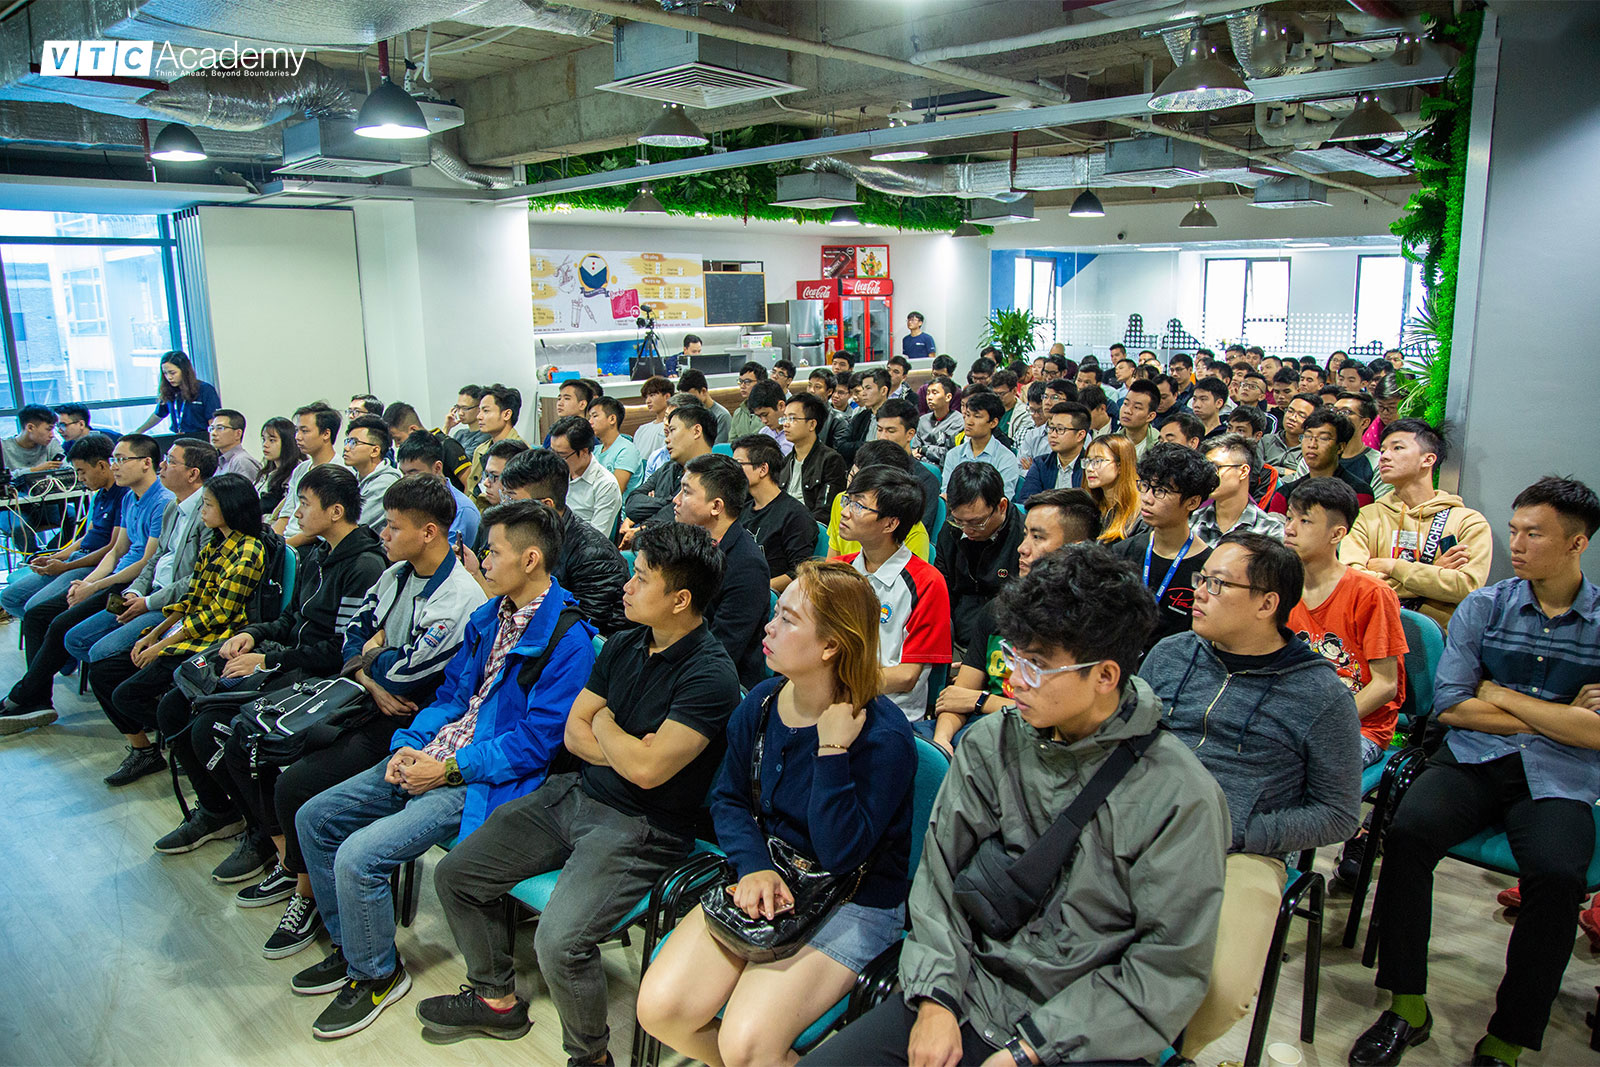 VTC Academy tổ chức hội thảo “AI Full-stack Development” tại Hà Nội